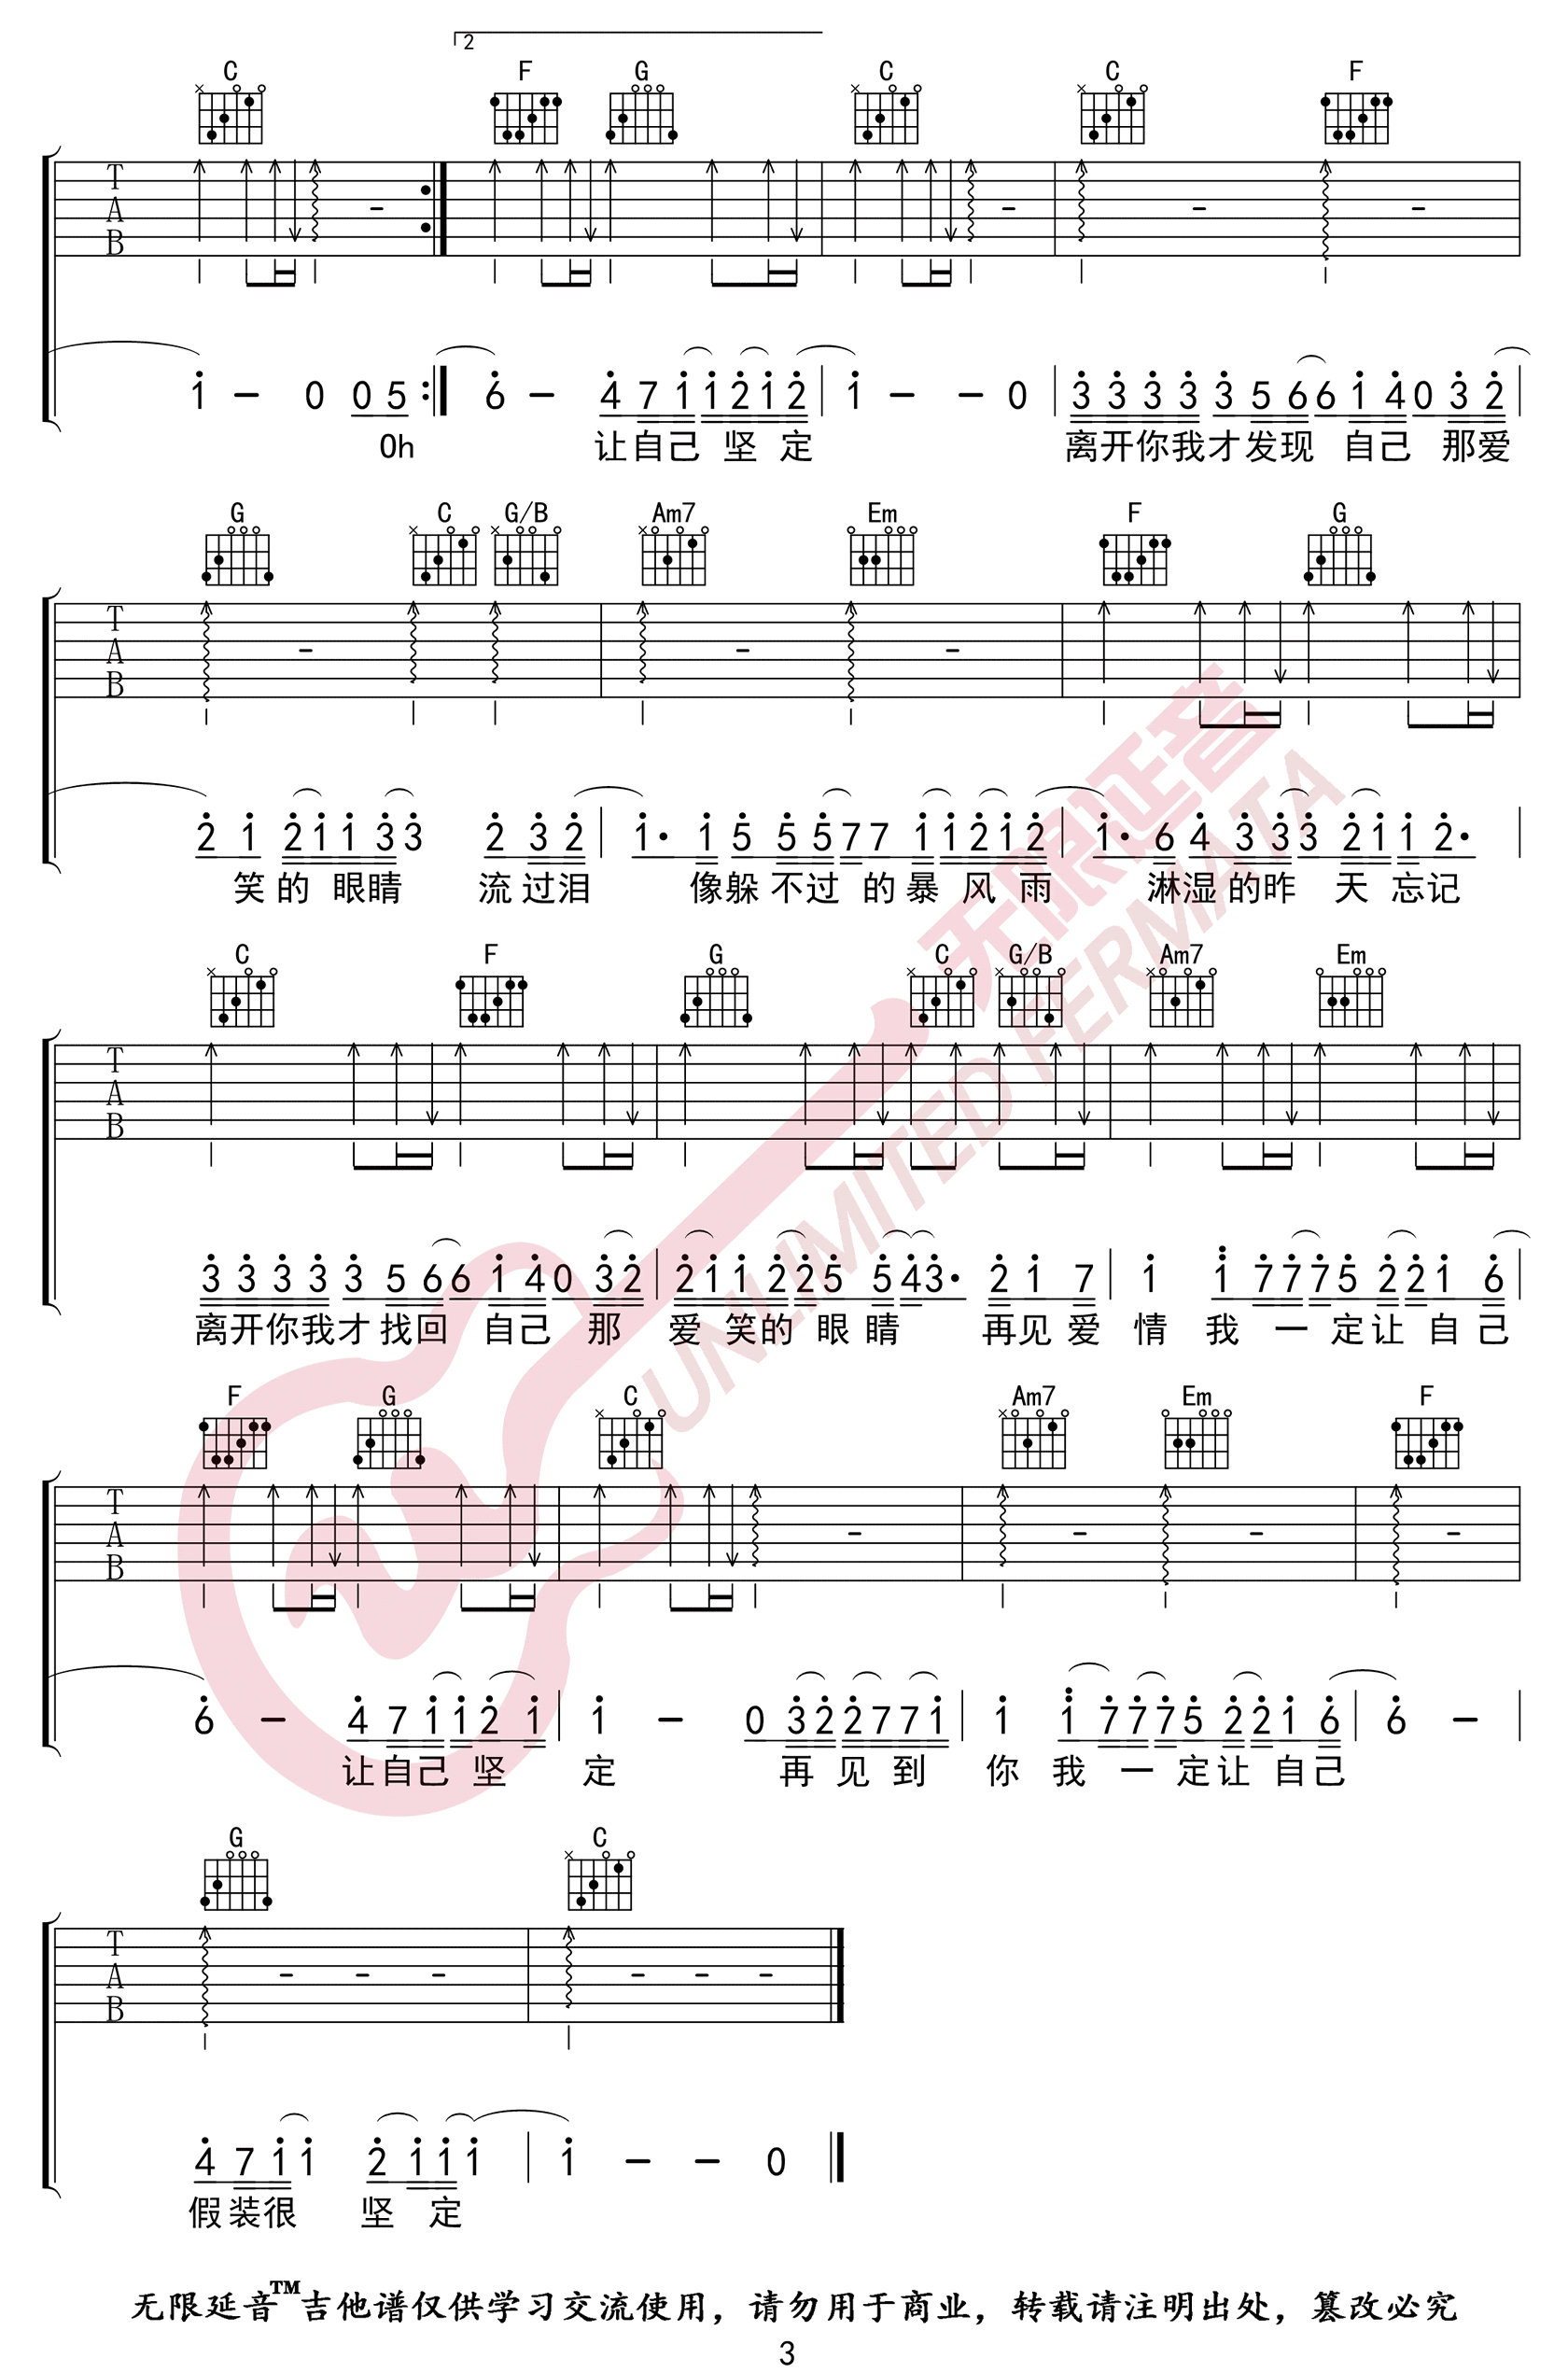 林俊杰《爱笑的眼睛》吉他谱(C调)-Guitar Music Score - GTP吉他谱